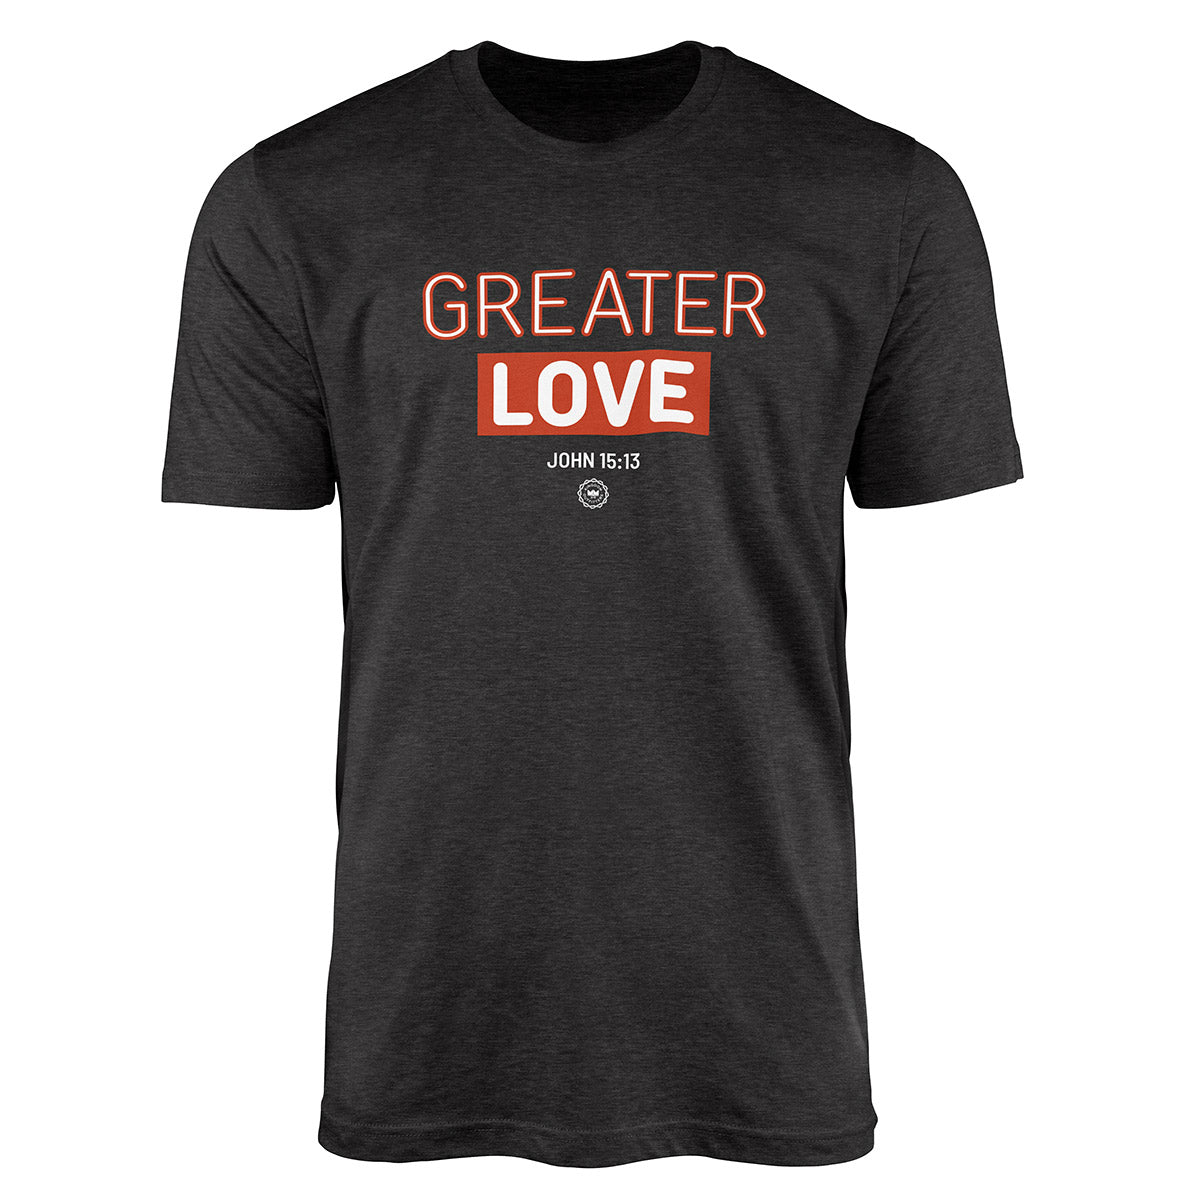 John 15:13 - Greater Love